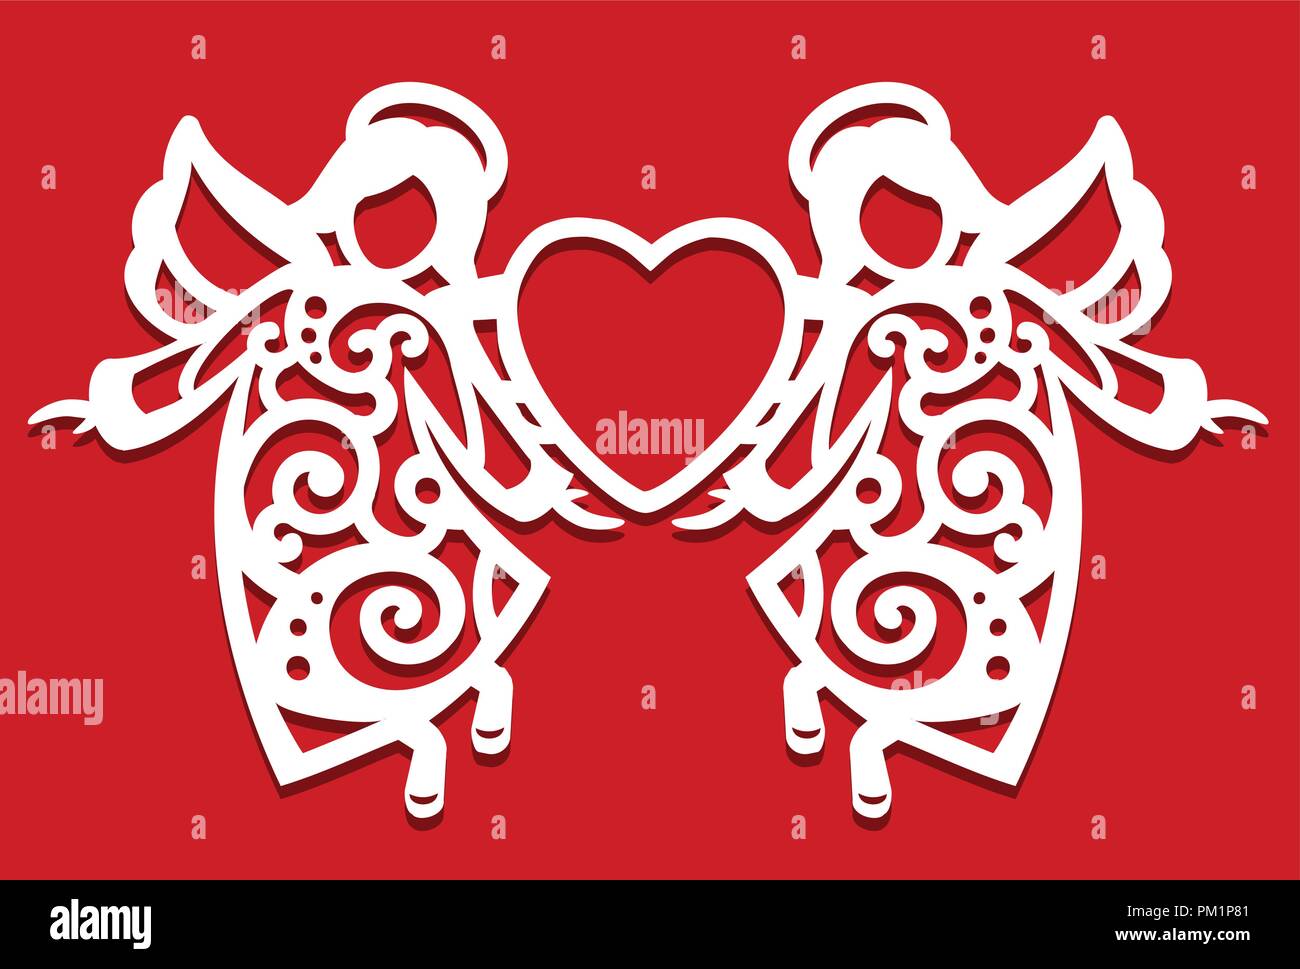 Weiße Weihnacht fliegen zwei Engel auf dem roten Hintergrund. Engel halten das Herz in den Händen. Silhouette der Engel kann für Karten-, Laser verwenden. Schneiden, Plotter schneiden. Stock Vektor